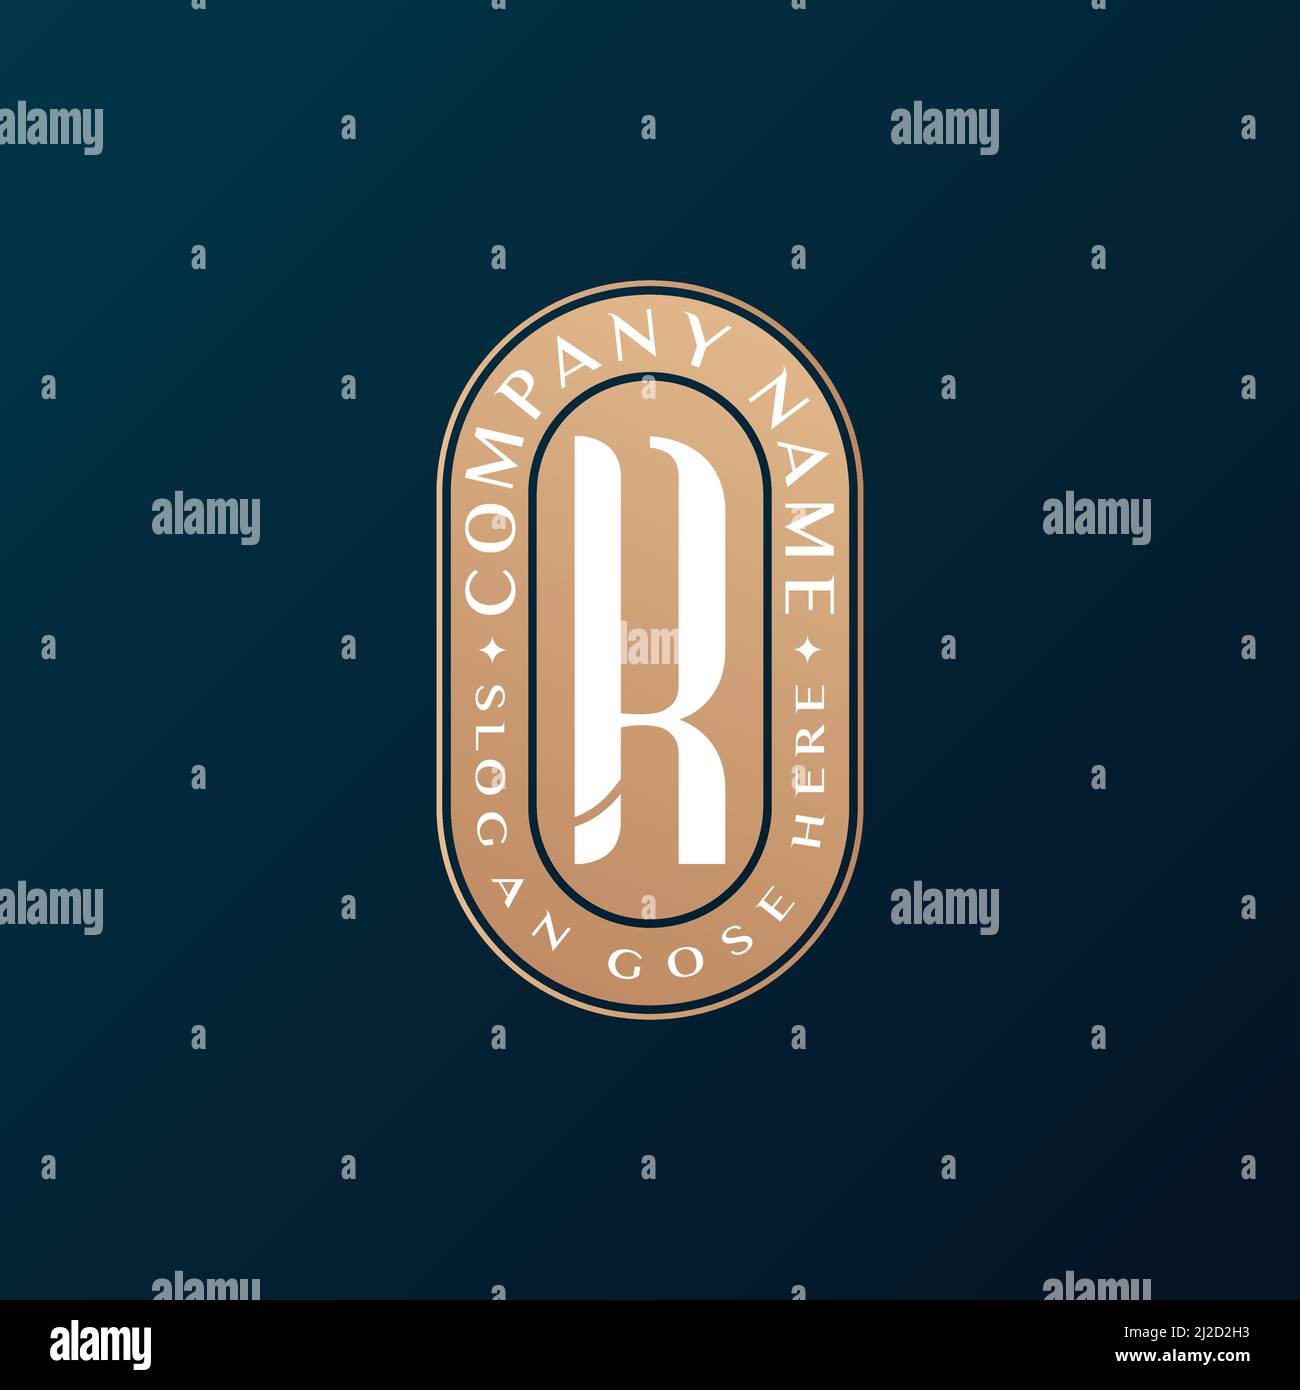 Abstrait Emblem Premium luxe identité d'entreprise élégante lettre R logo design Illustration de Vecteur